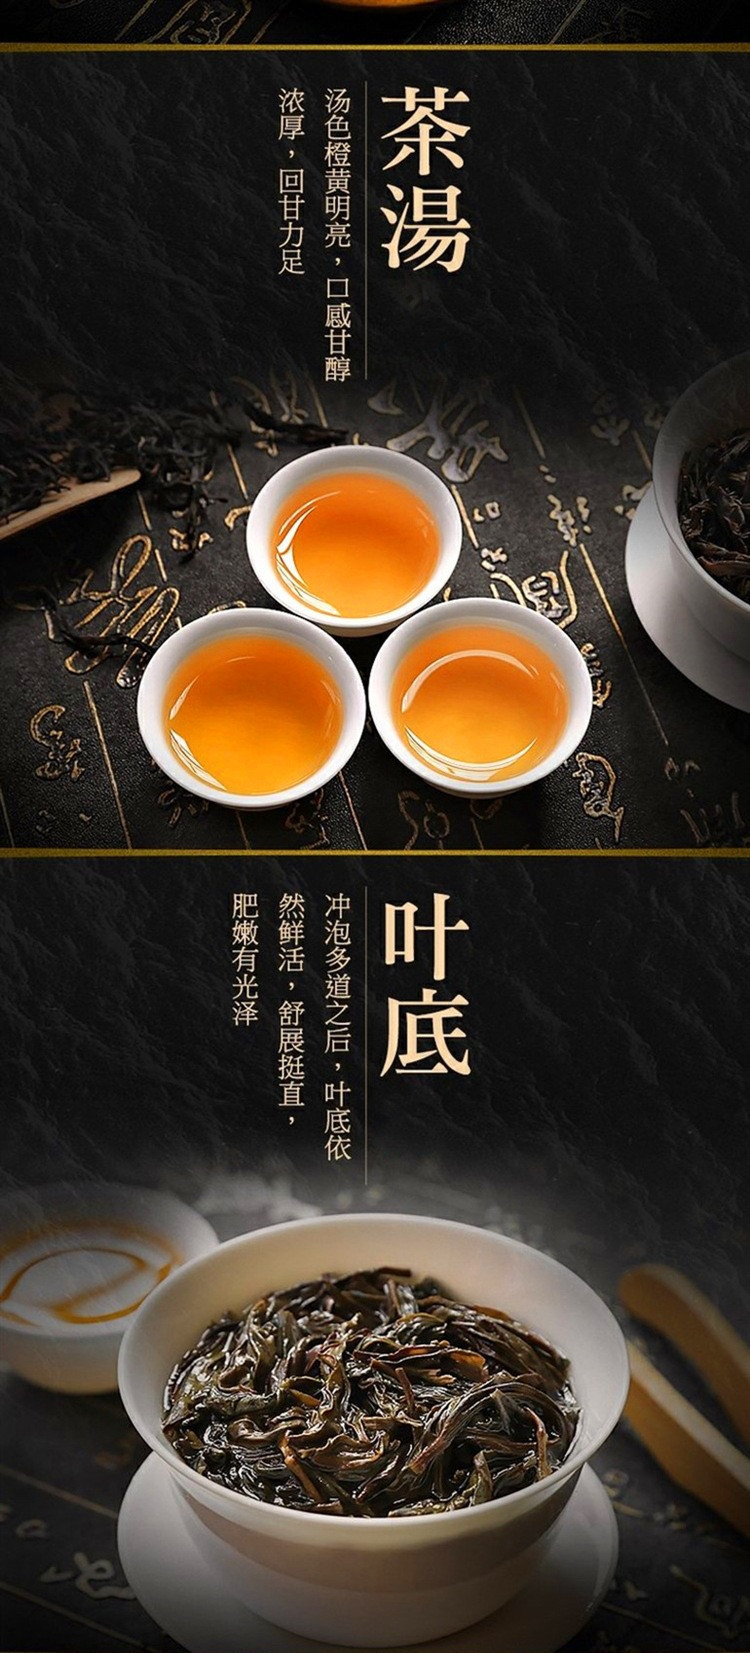 天王 潮州凤凰单枞茶 鸭屎香茶